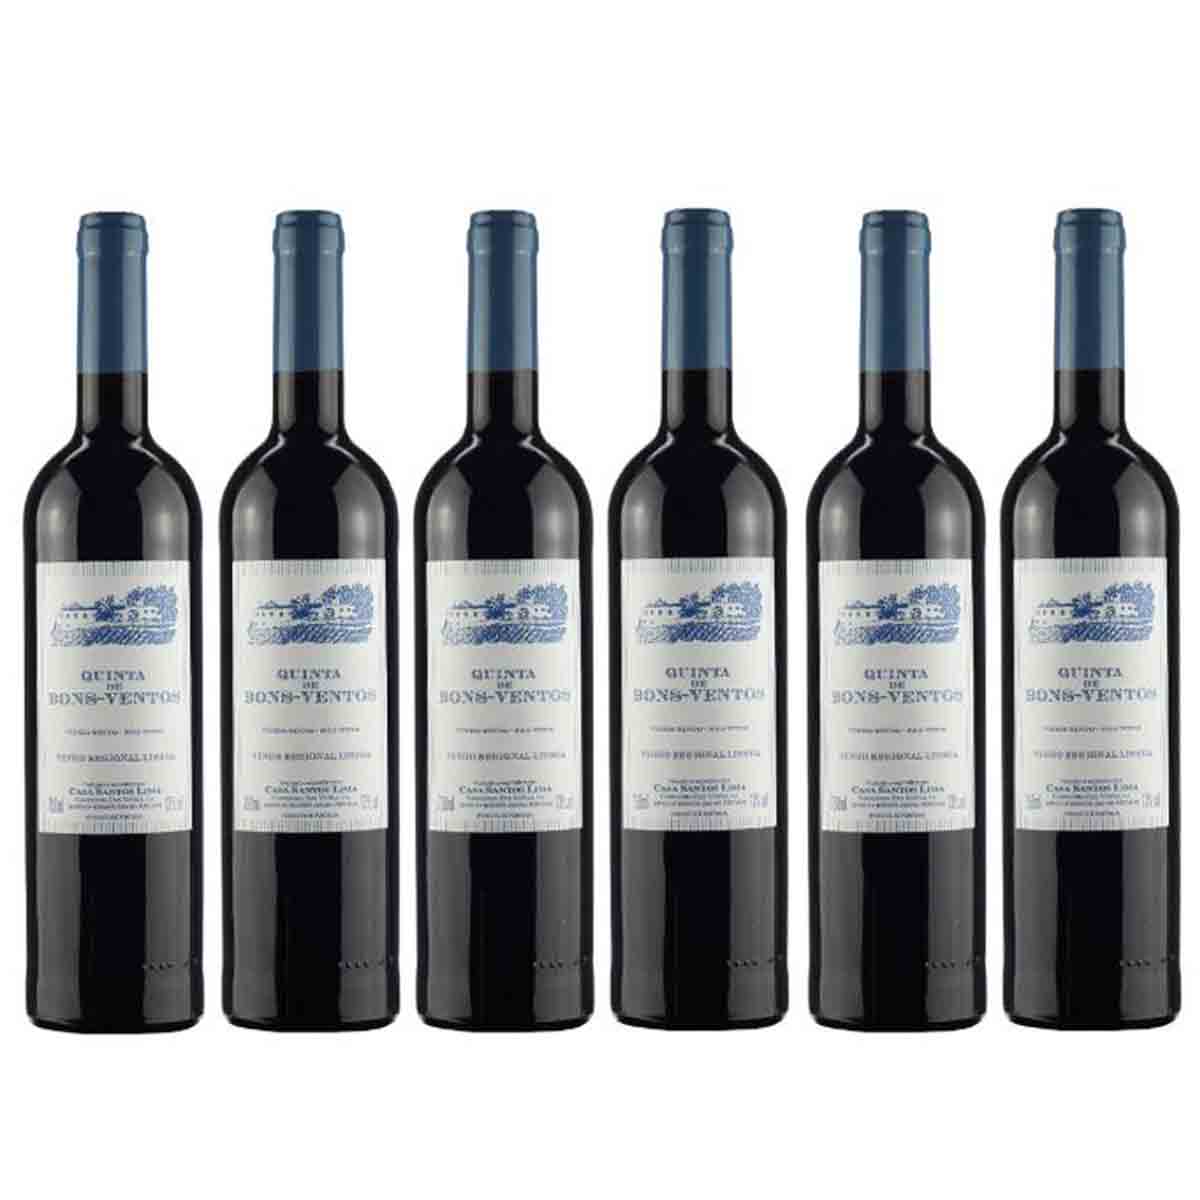 Kit 6 Vinhos Tintos Português Quinta De Bons Ventos 2019 750 ml